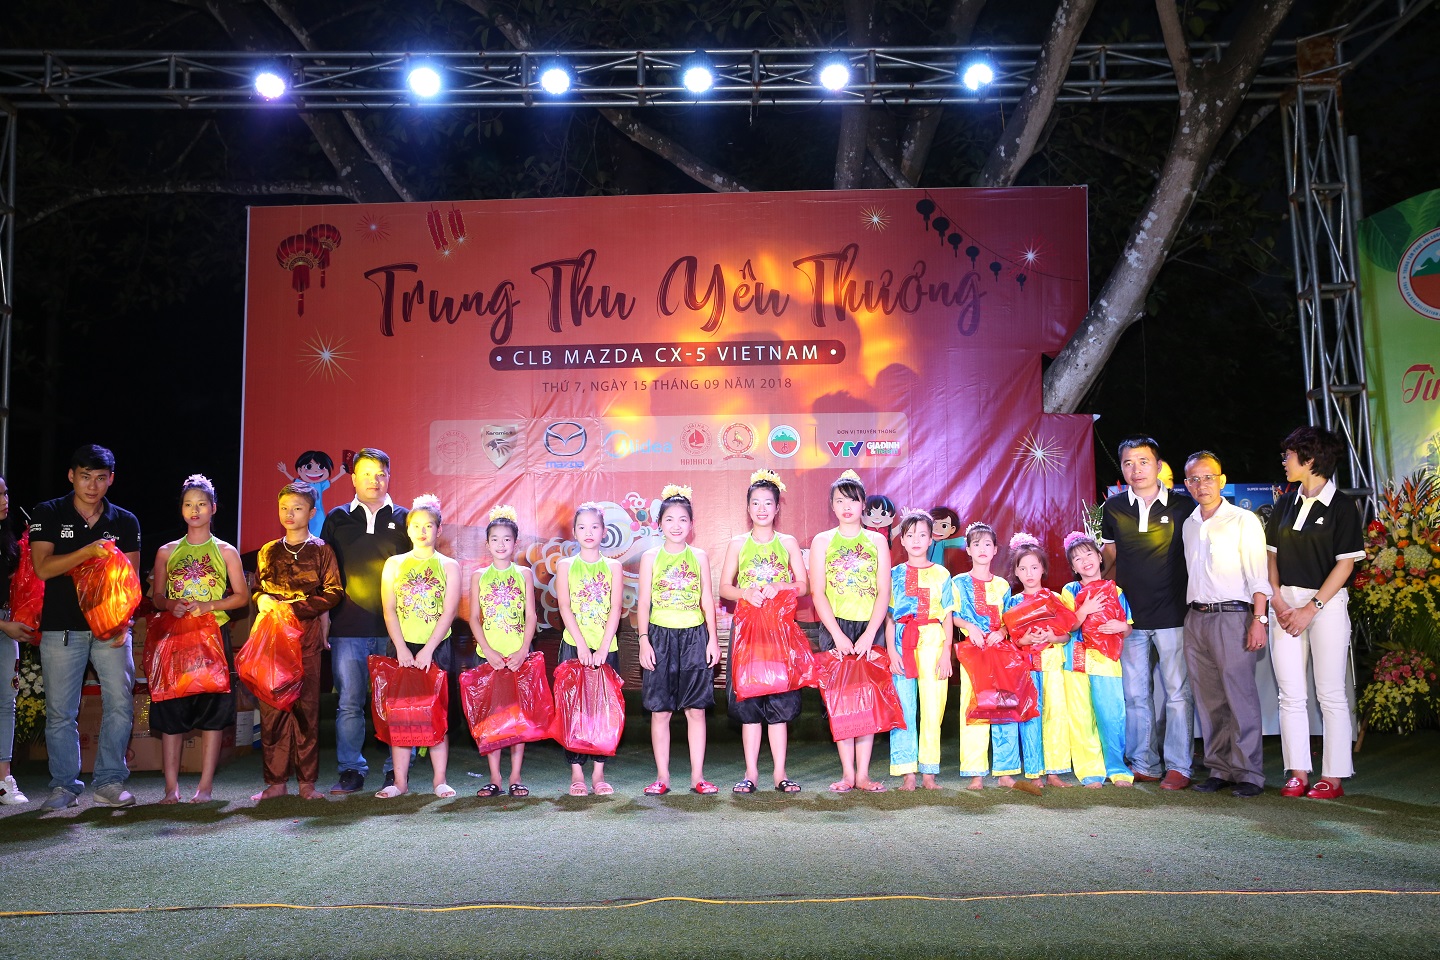 Hải Hà đồng hành cùng CLB Mazda Cx5 Việt Nam tổ chức chương trình trung thu yêu thương cho các em thiếu nhi gặp khó khăn